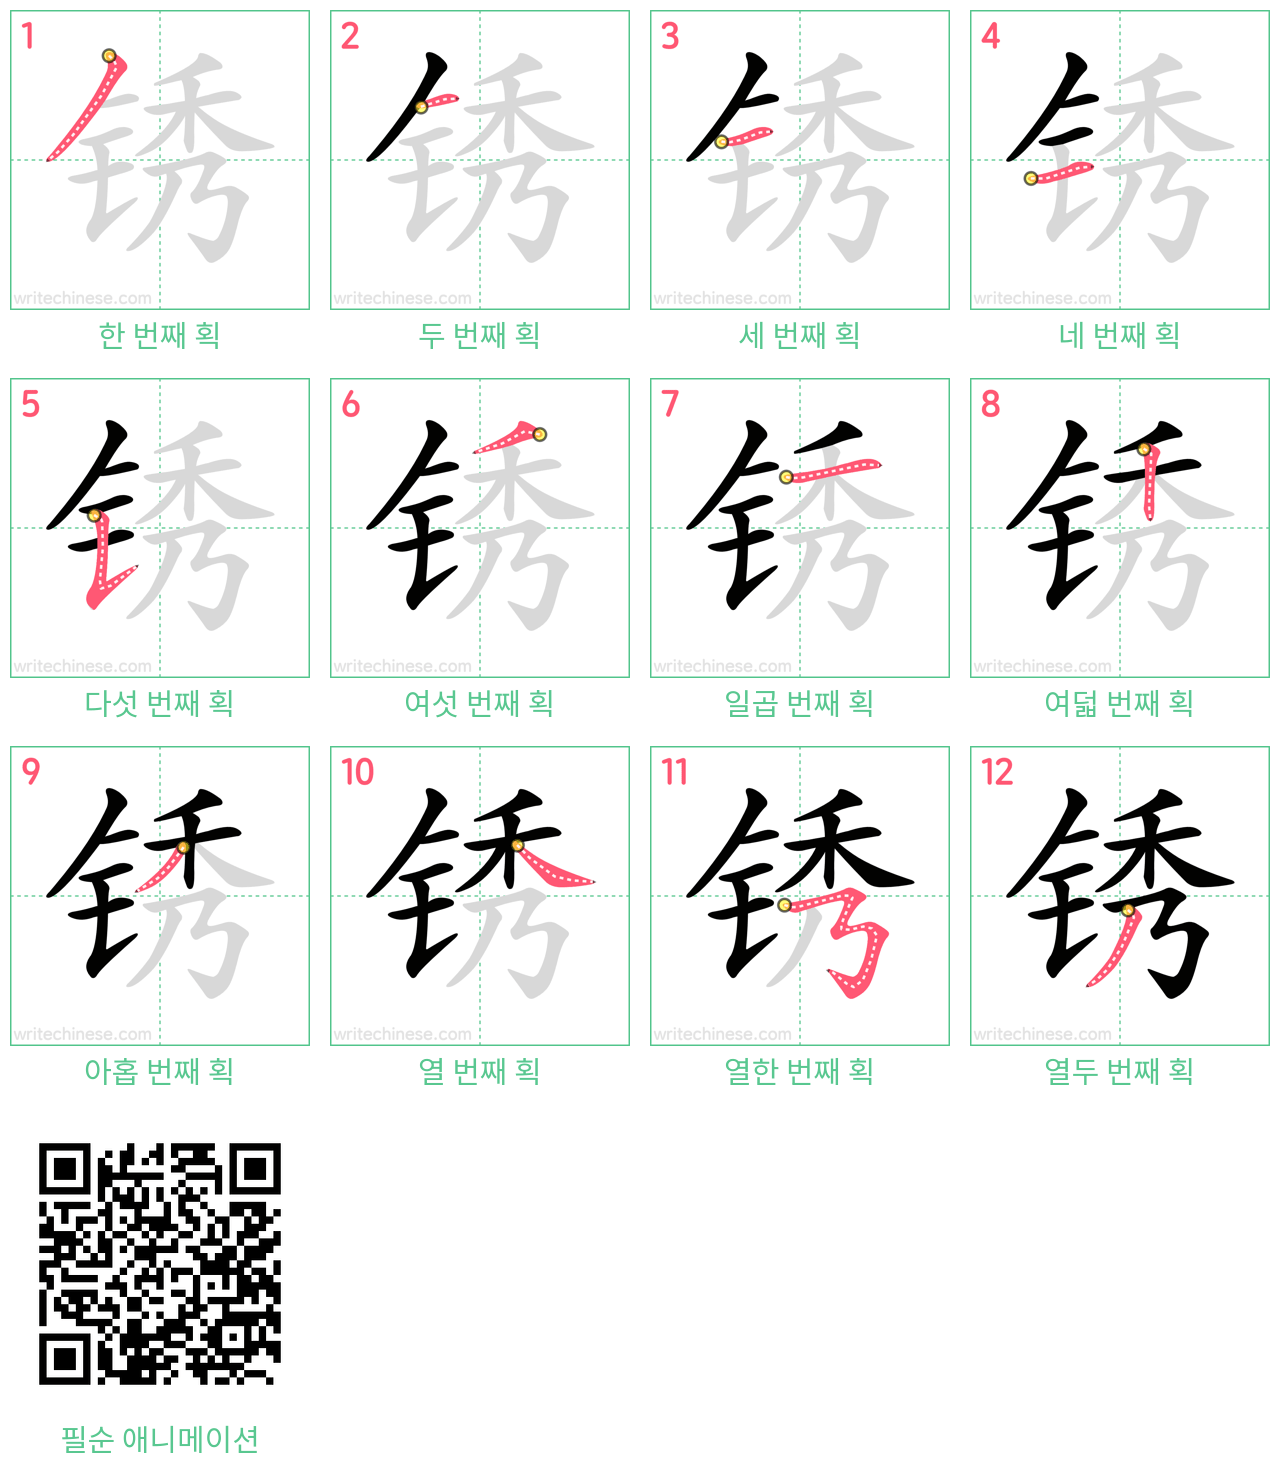 锈 step-by-step stroke order diagrams